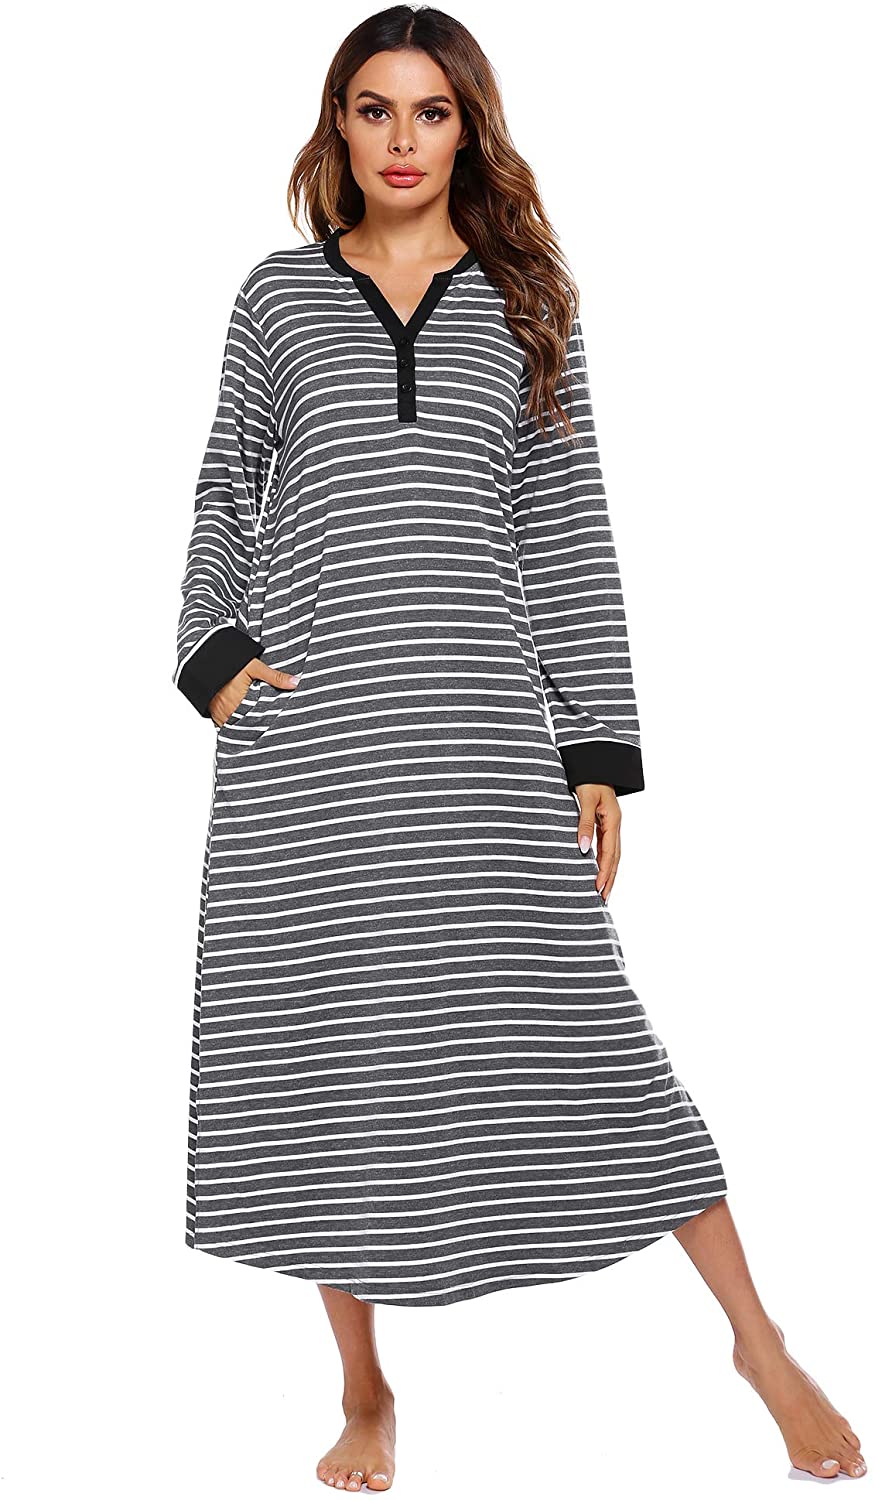 Ekouaer Women’s Striped Nightgown,Long Loungewear Nightshirt Sleepwear ...